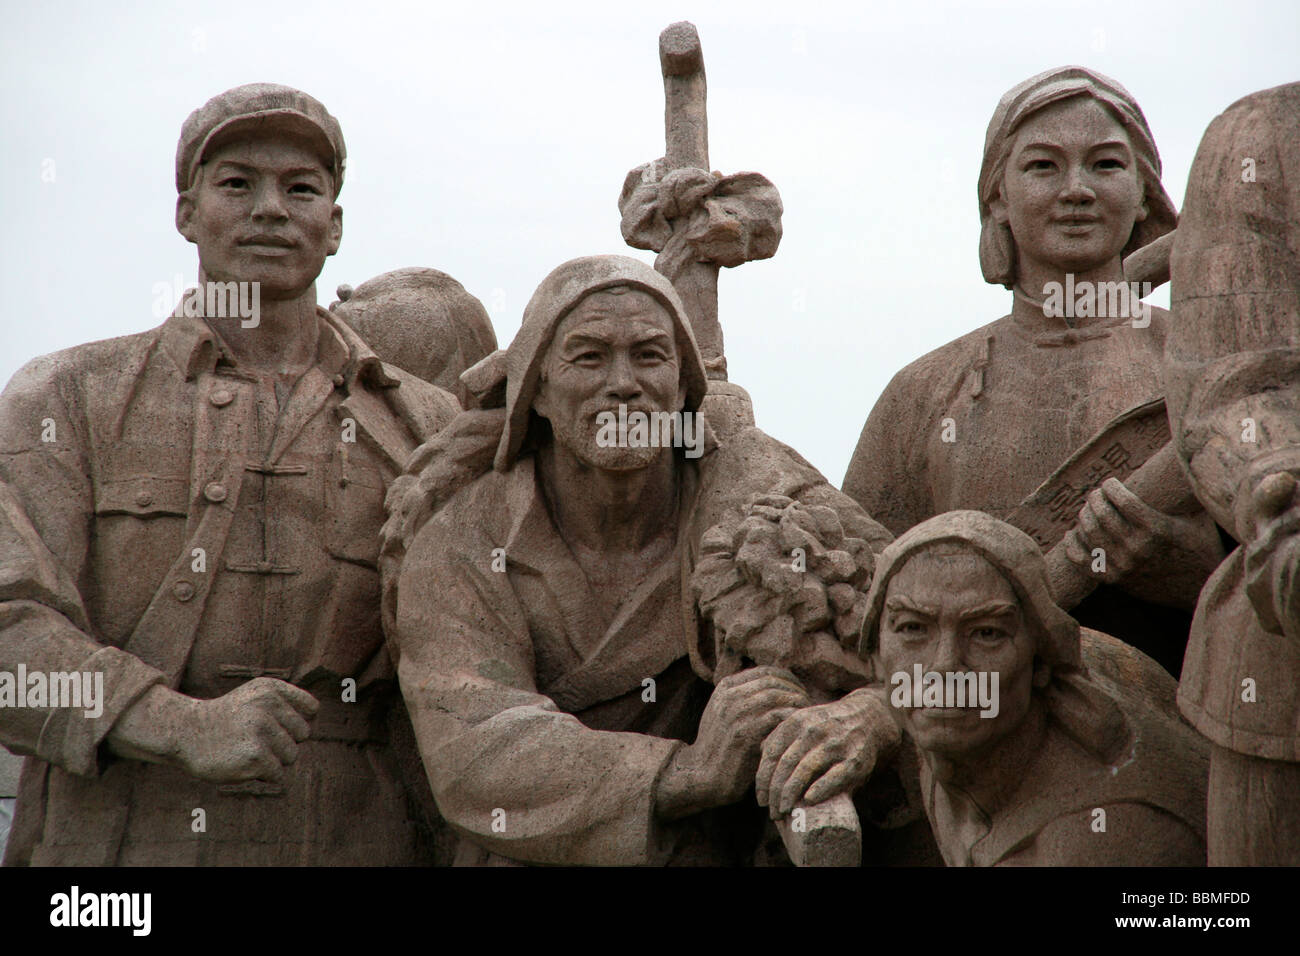 La Chine, Beijing. Monument situé en face du mausolée de Mao sur la Place Tiananmen, à Beijing, Chine. Banque D'Images